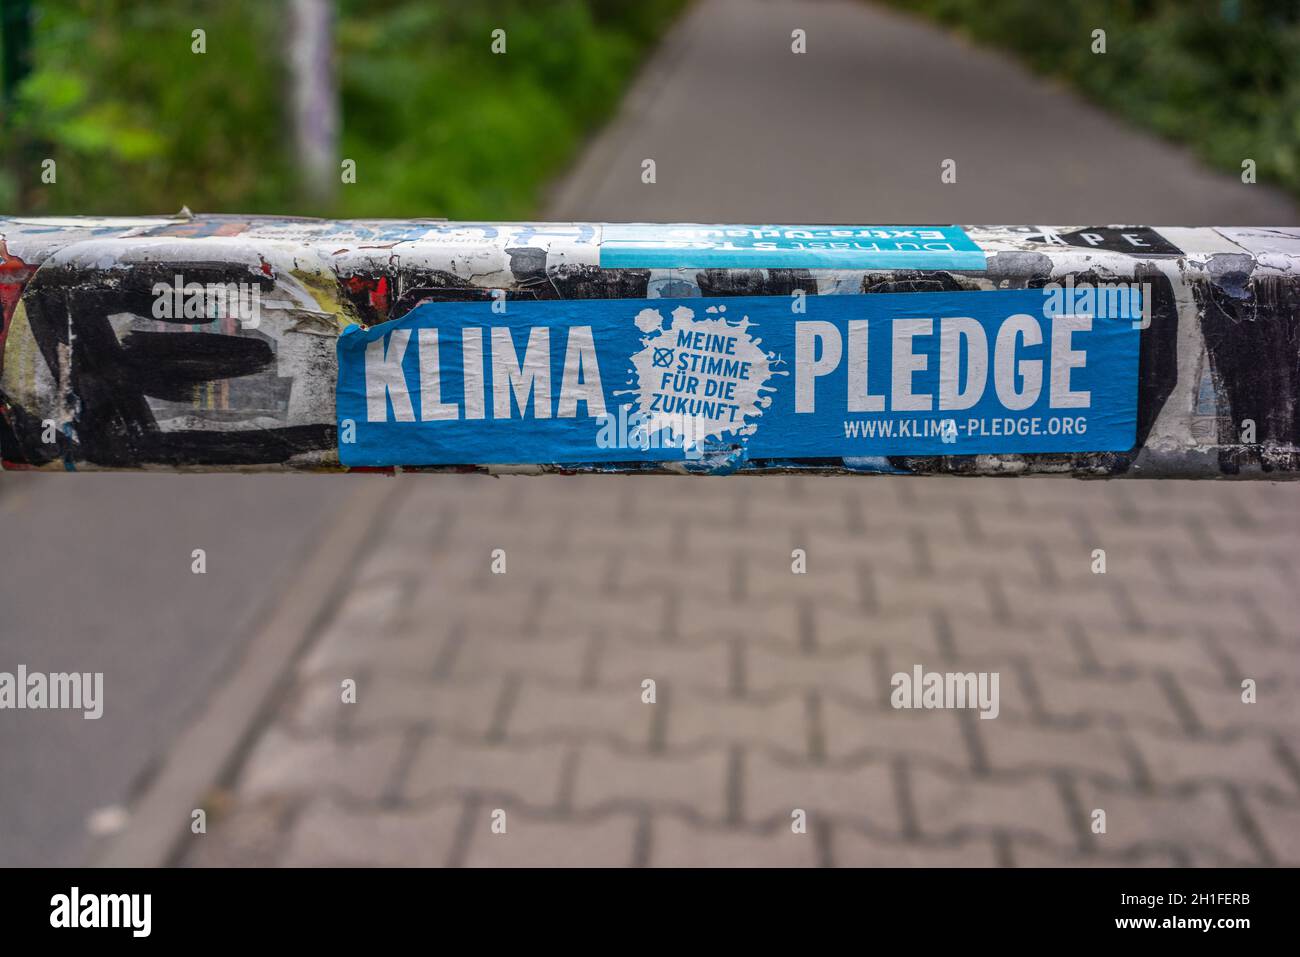 Klima pegno - adesivo campagna impegno climatico, Berlino, Germania, Europa Foto Stock